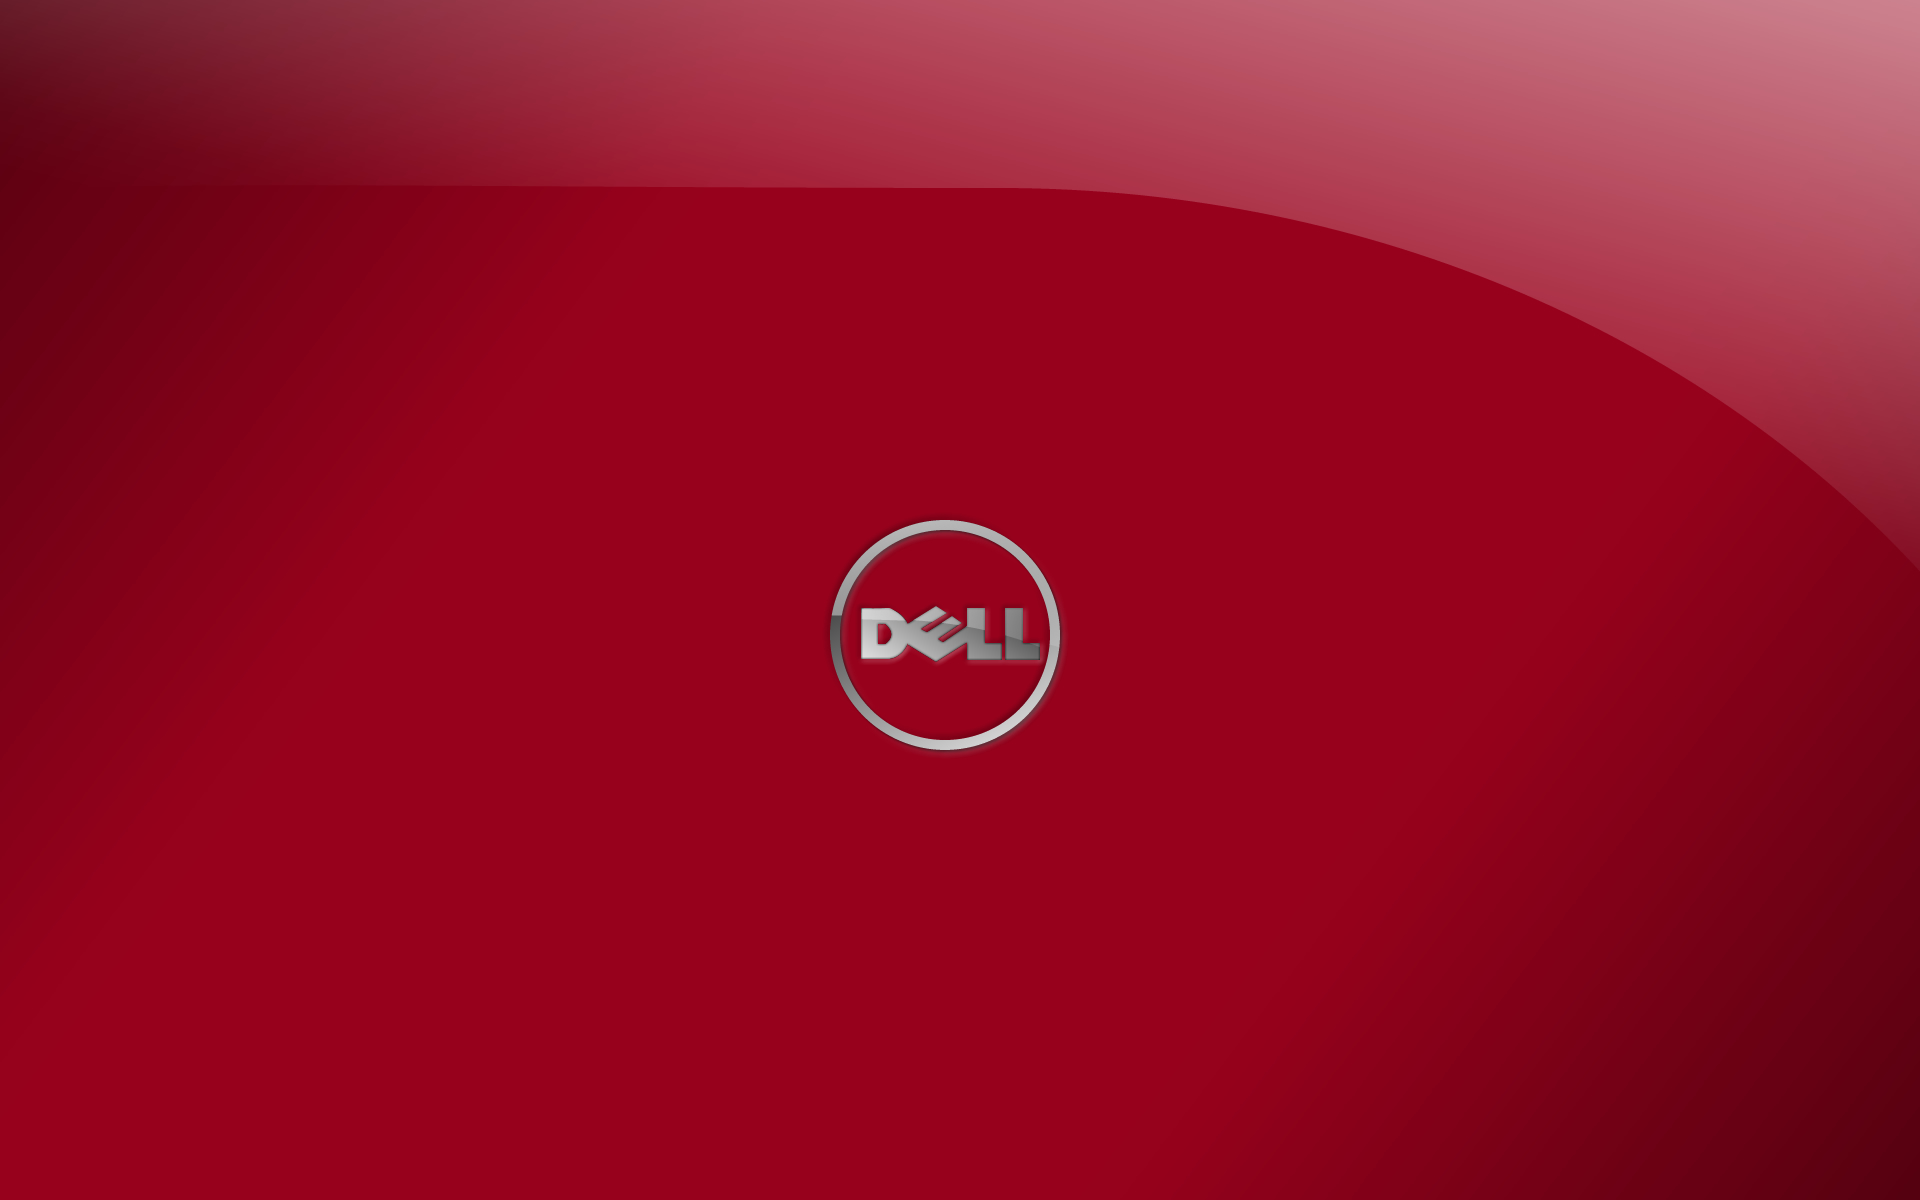 Dell Red Color Logo HD Desktop Wallpaper Background